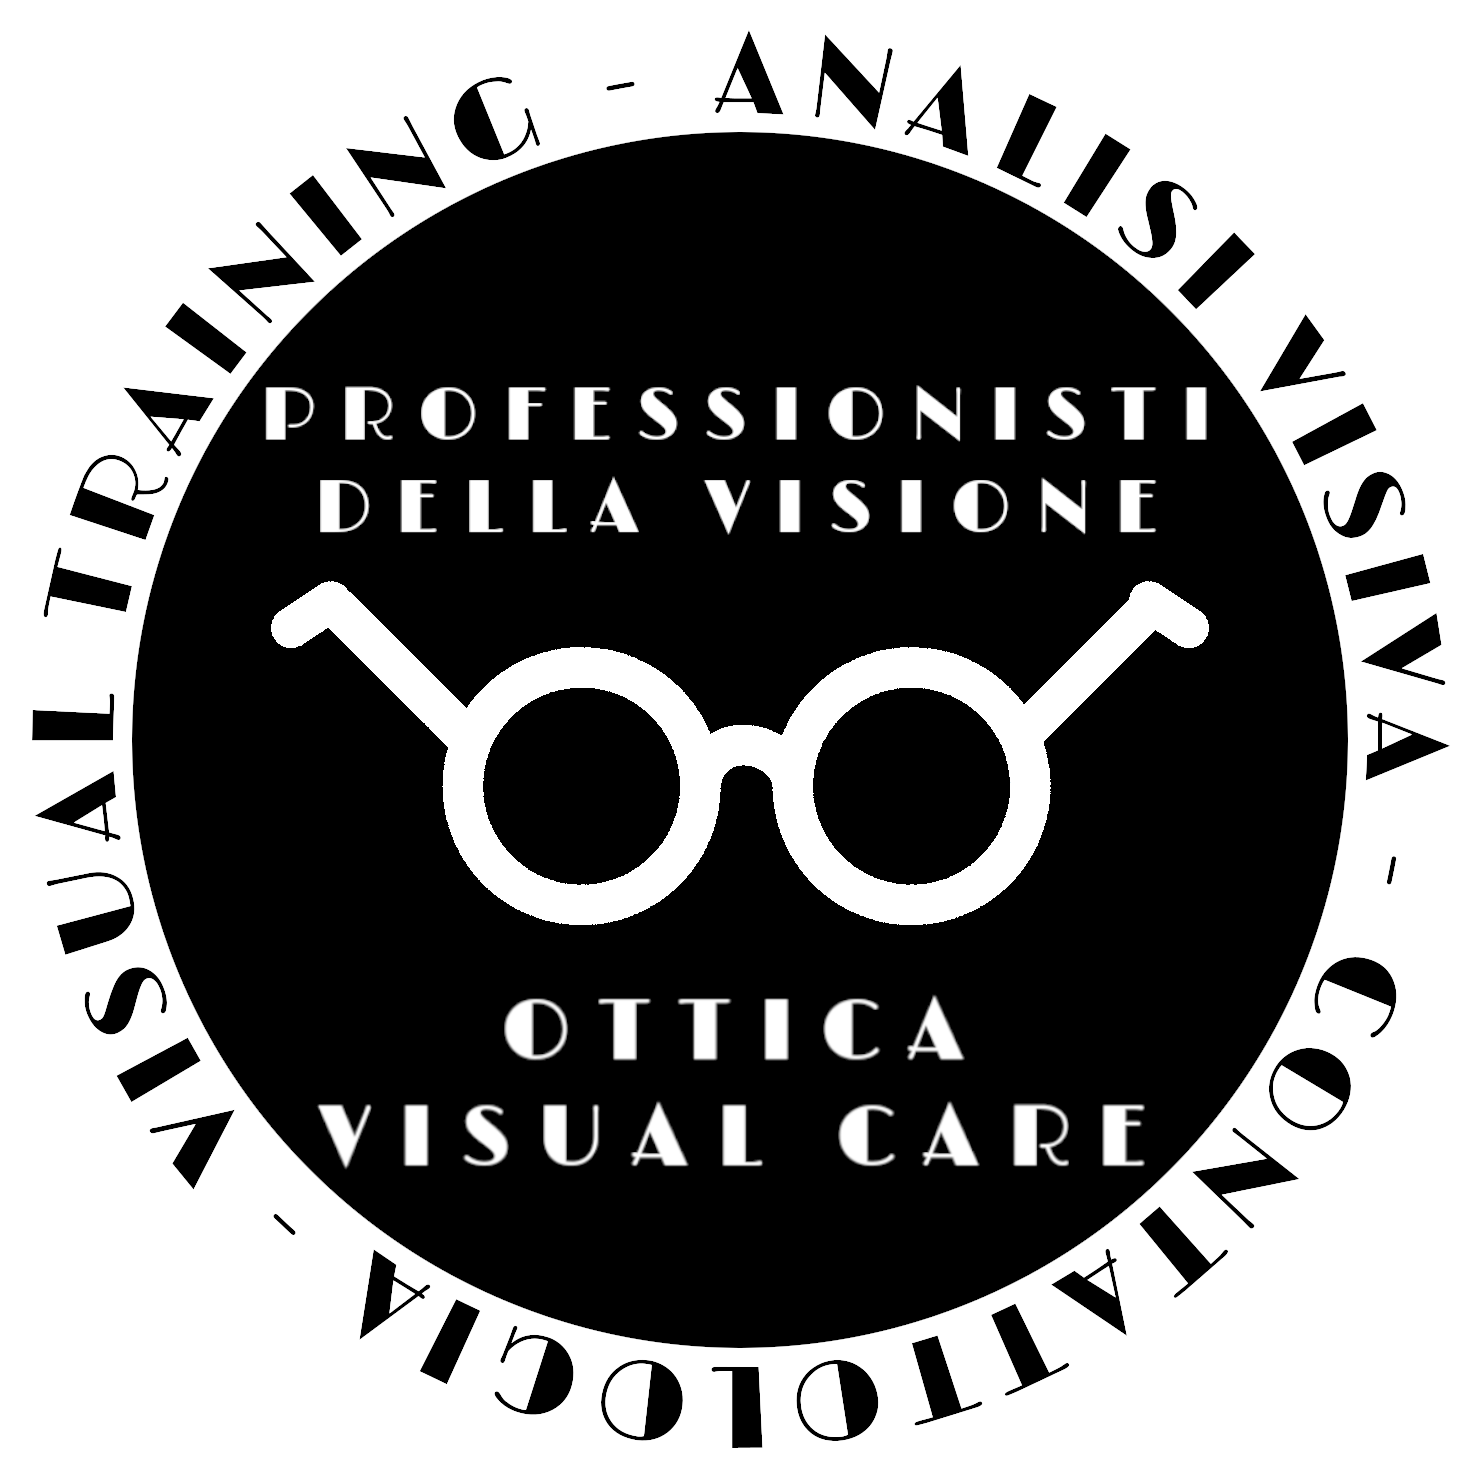 Ottica Visual Care logo